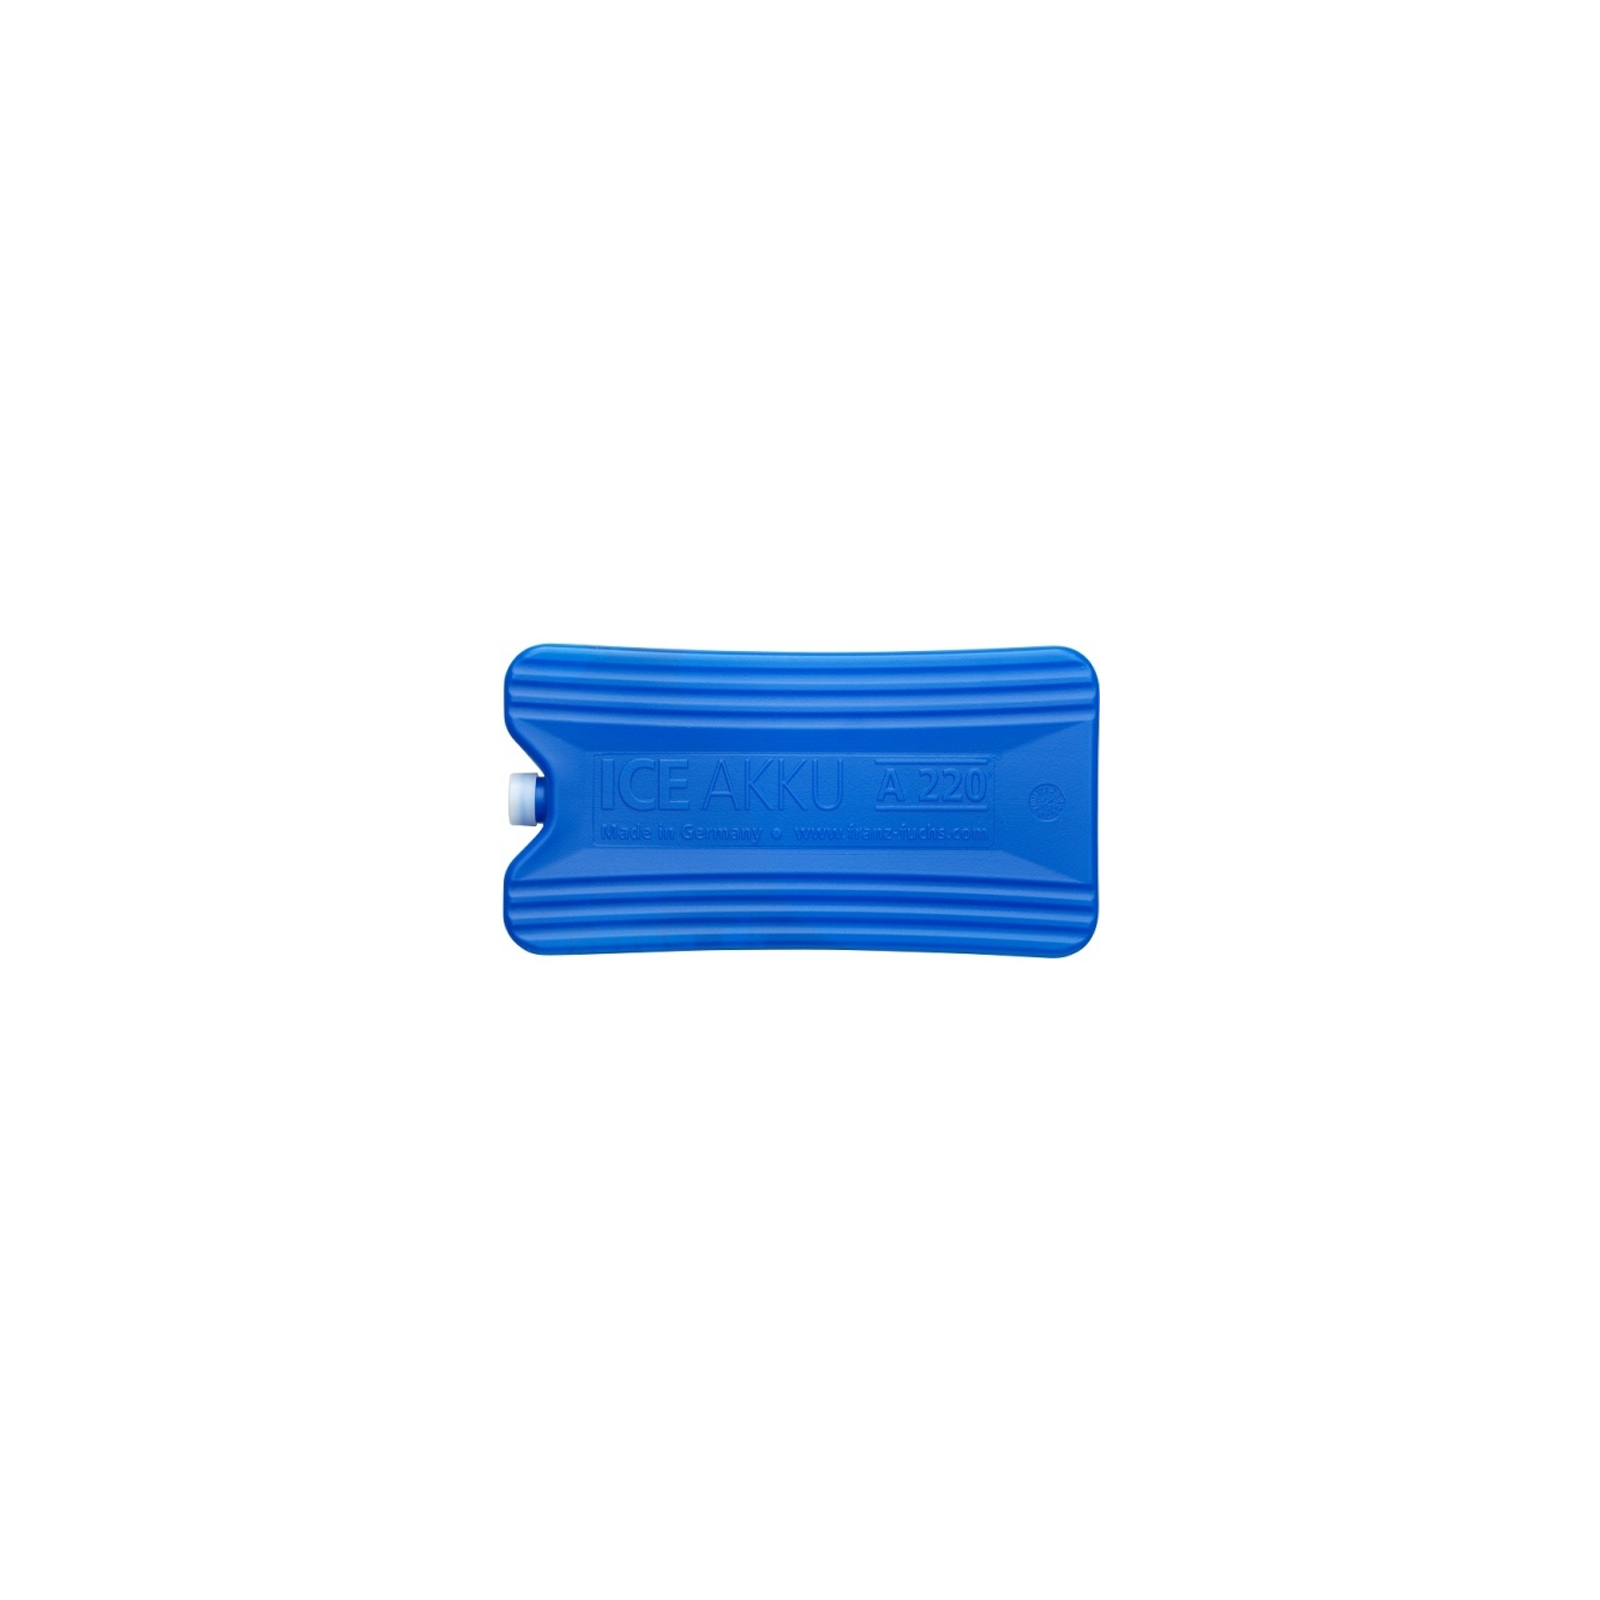 Аккумулятор холода Zorn IceAkku 1x220g blue (4251702500138) изображение 2